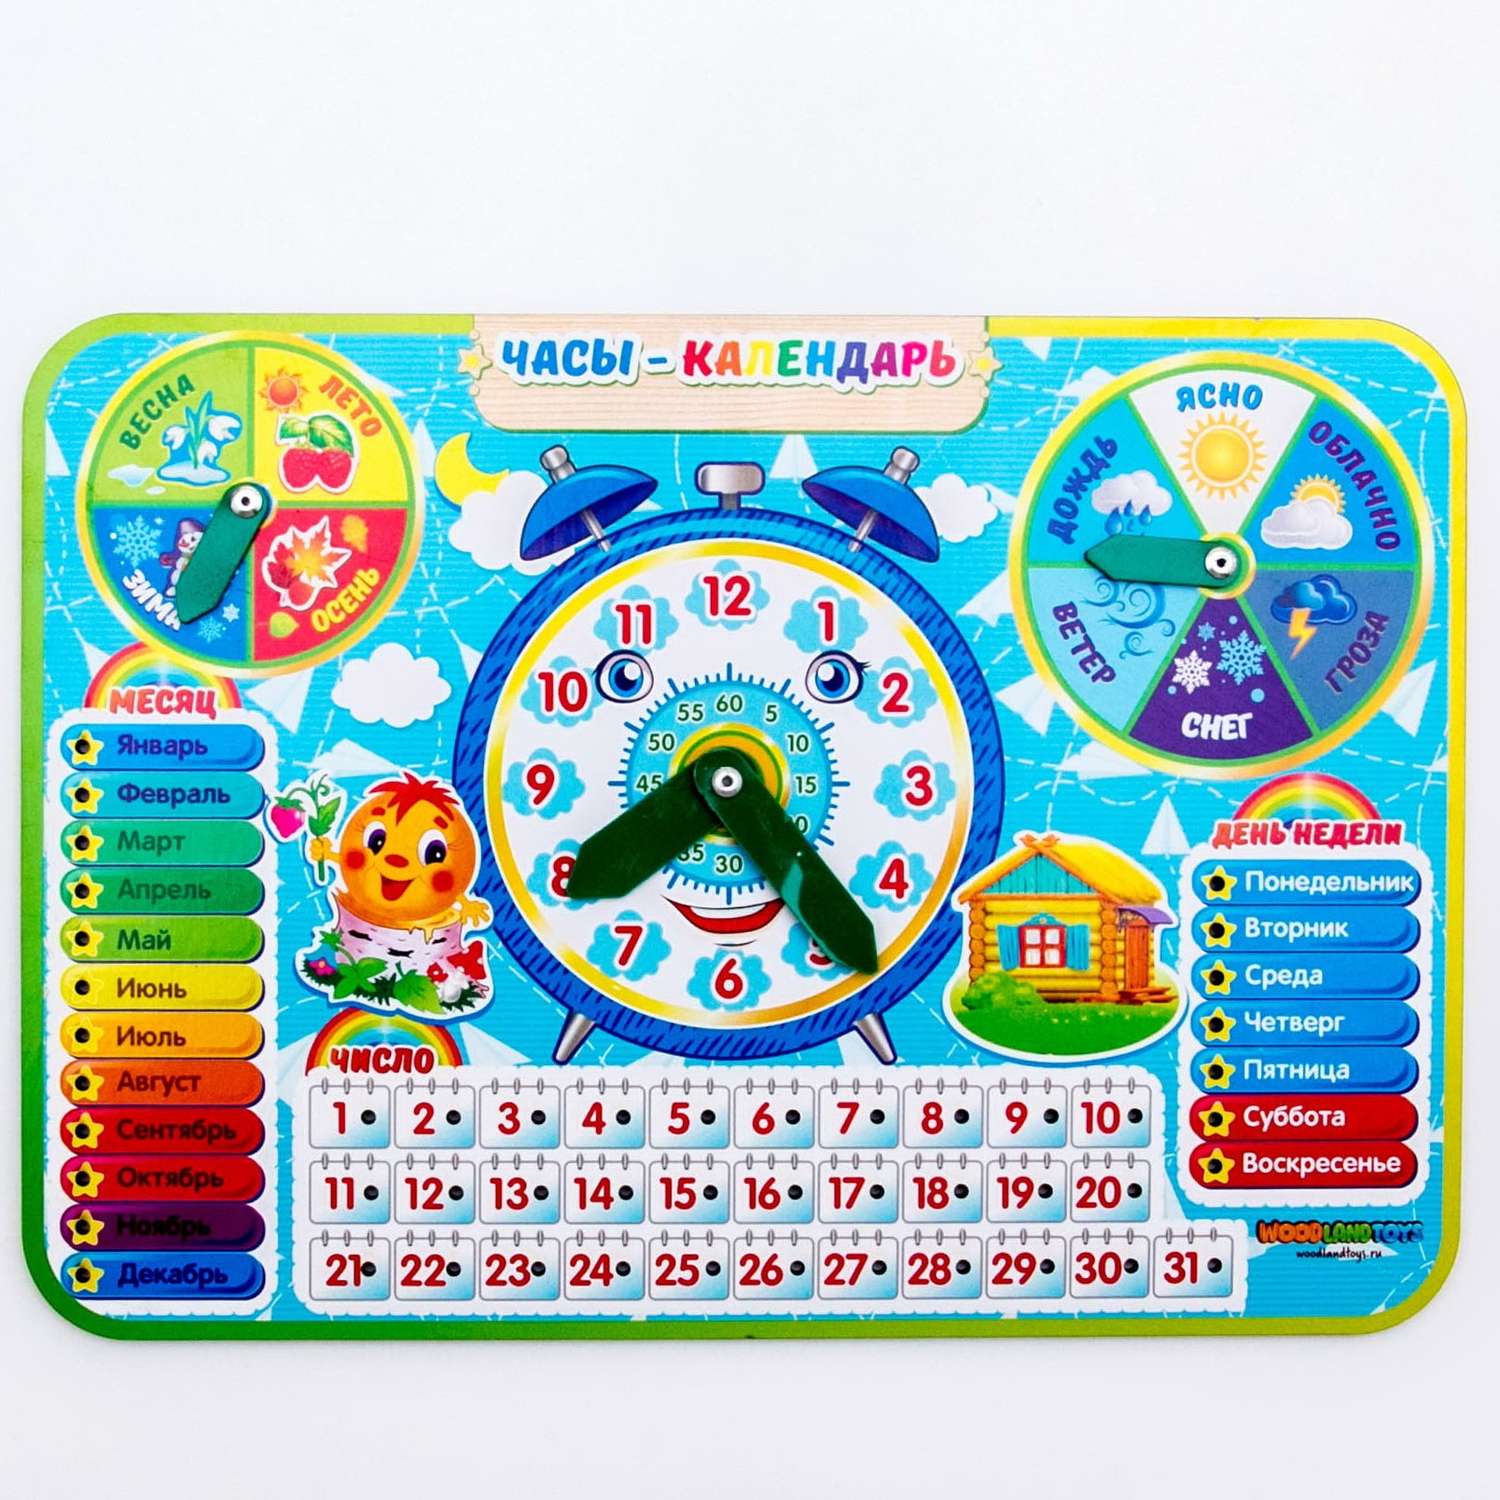 Обучающая игра часы календарь детский развивающие игрушки